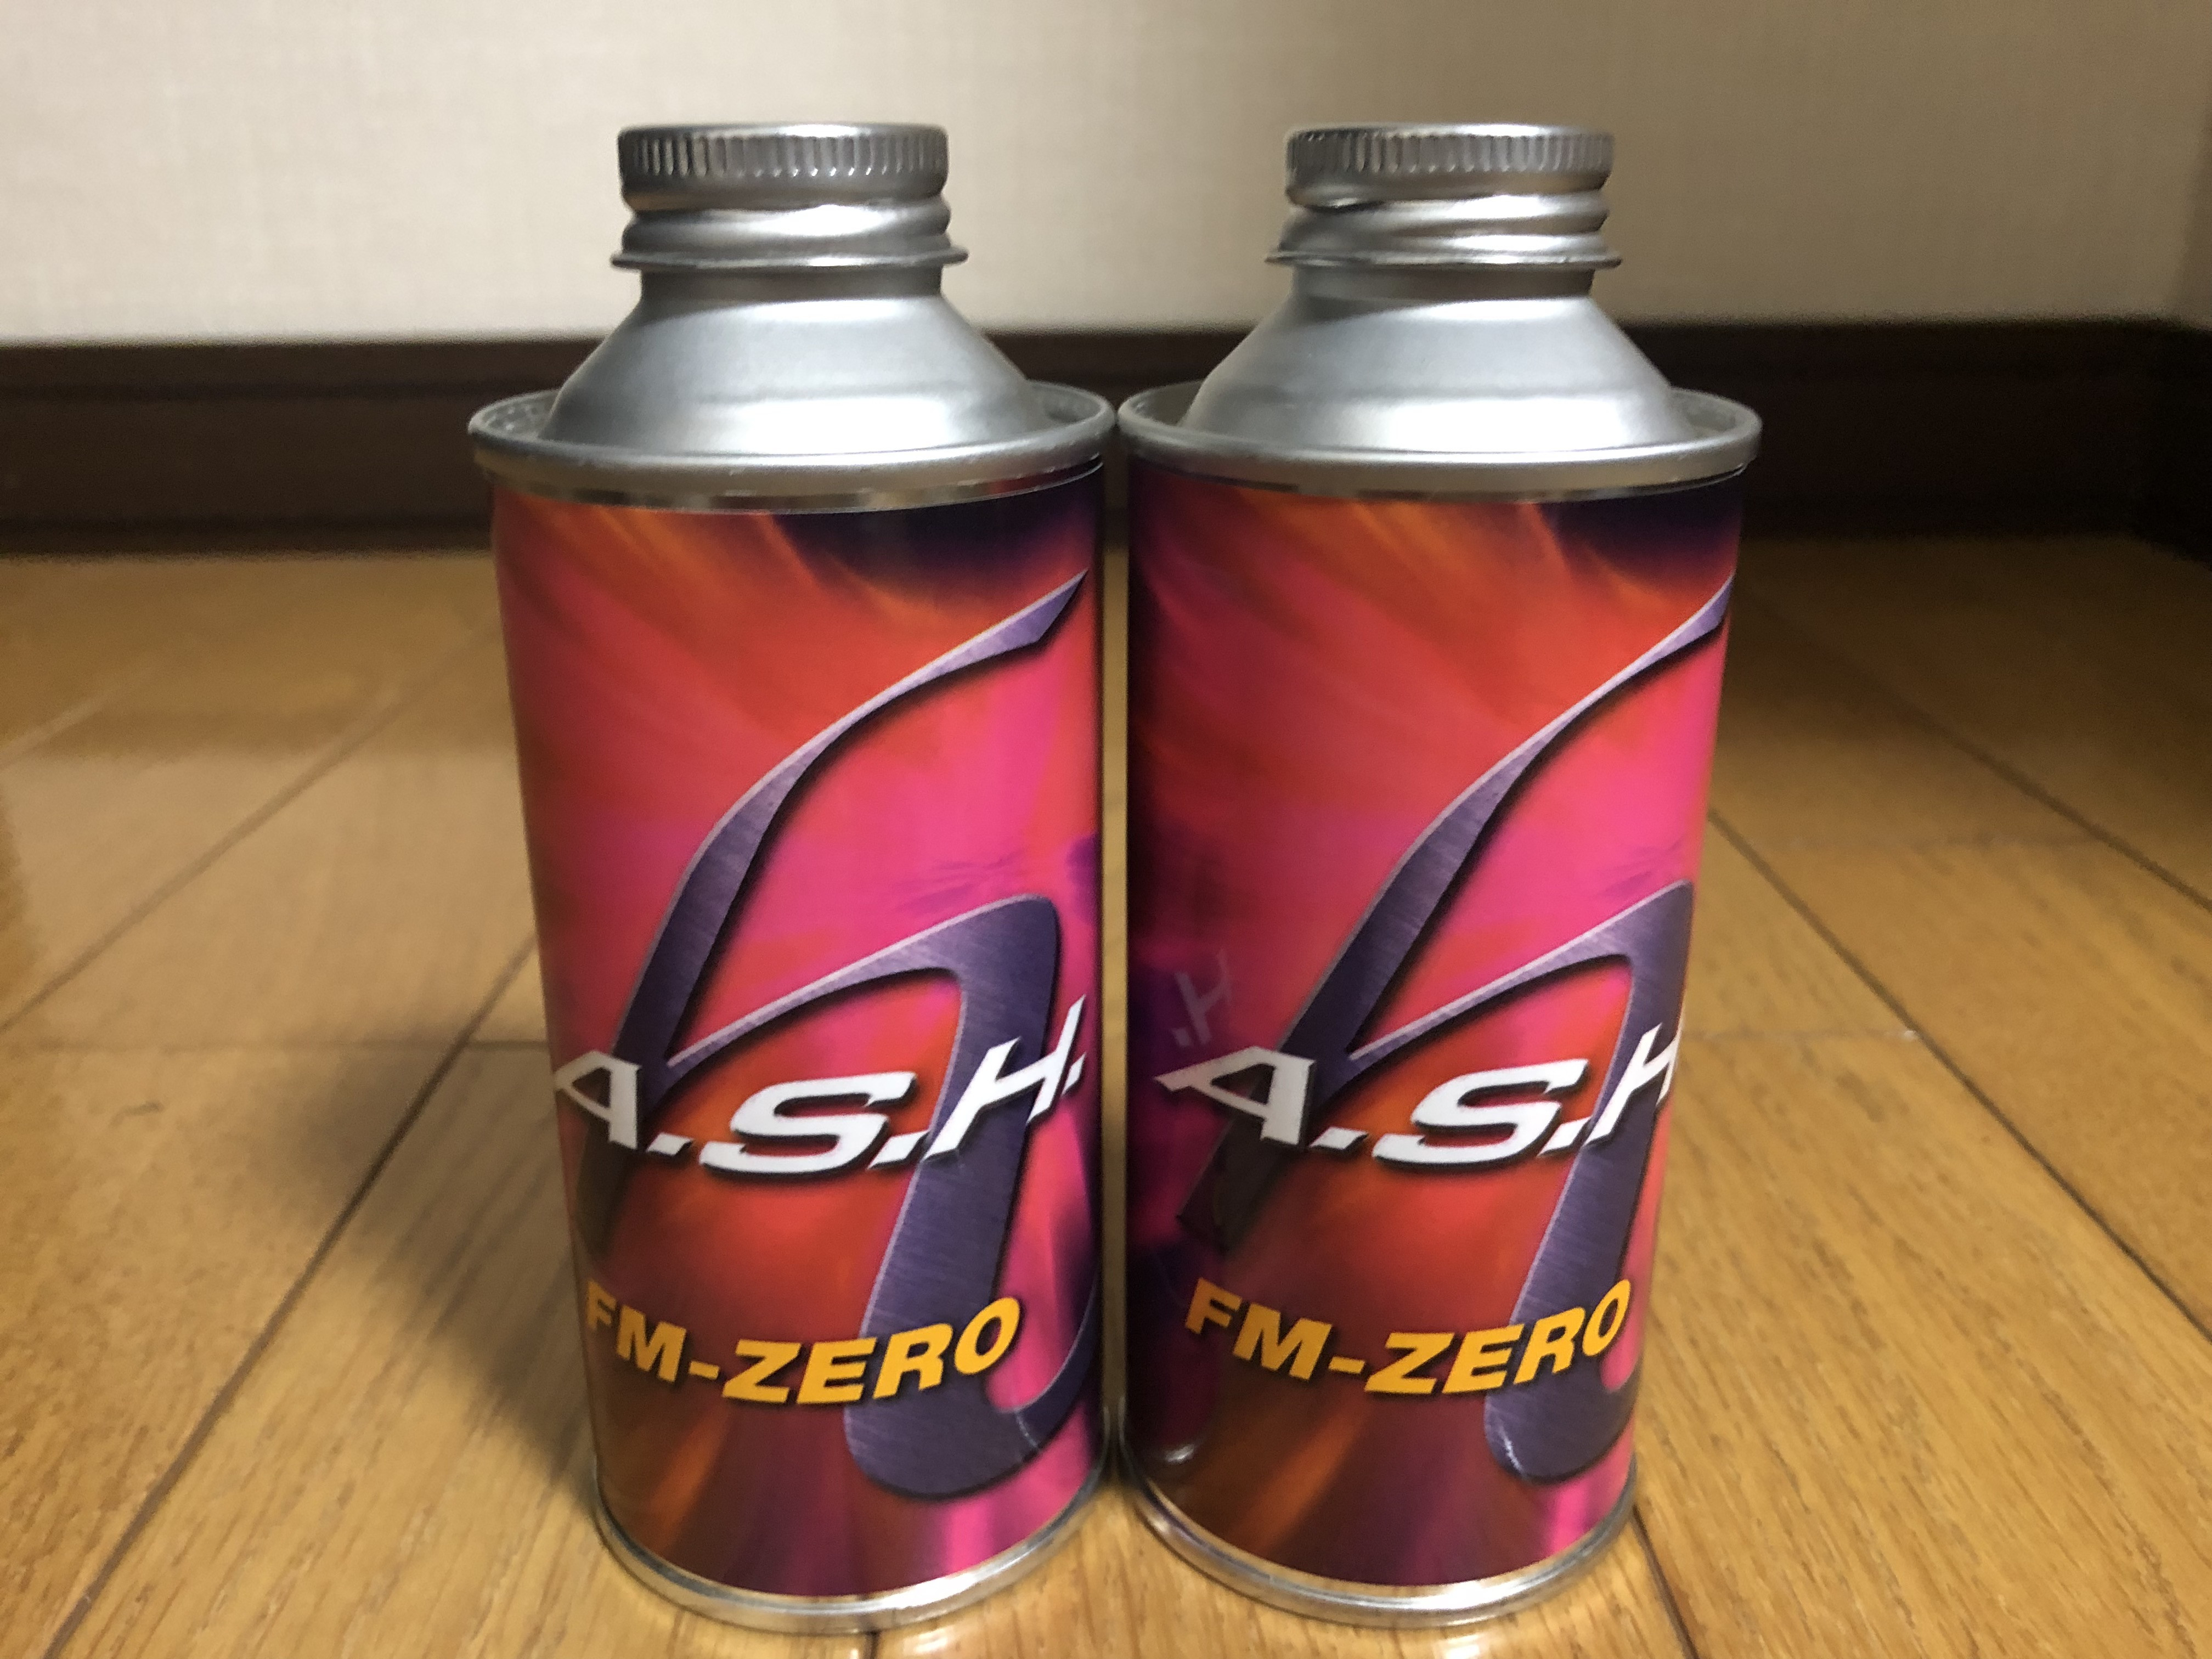 A.S.H FM-ZERO